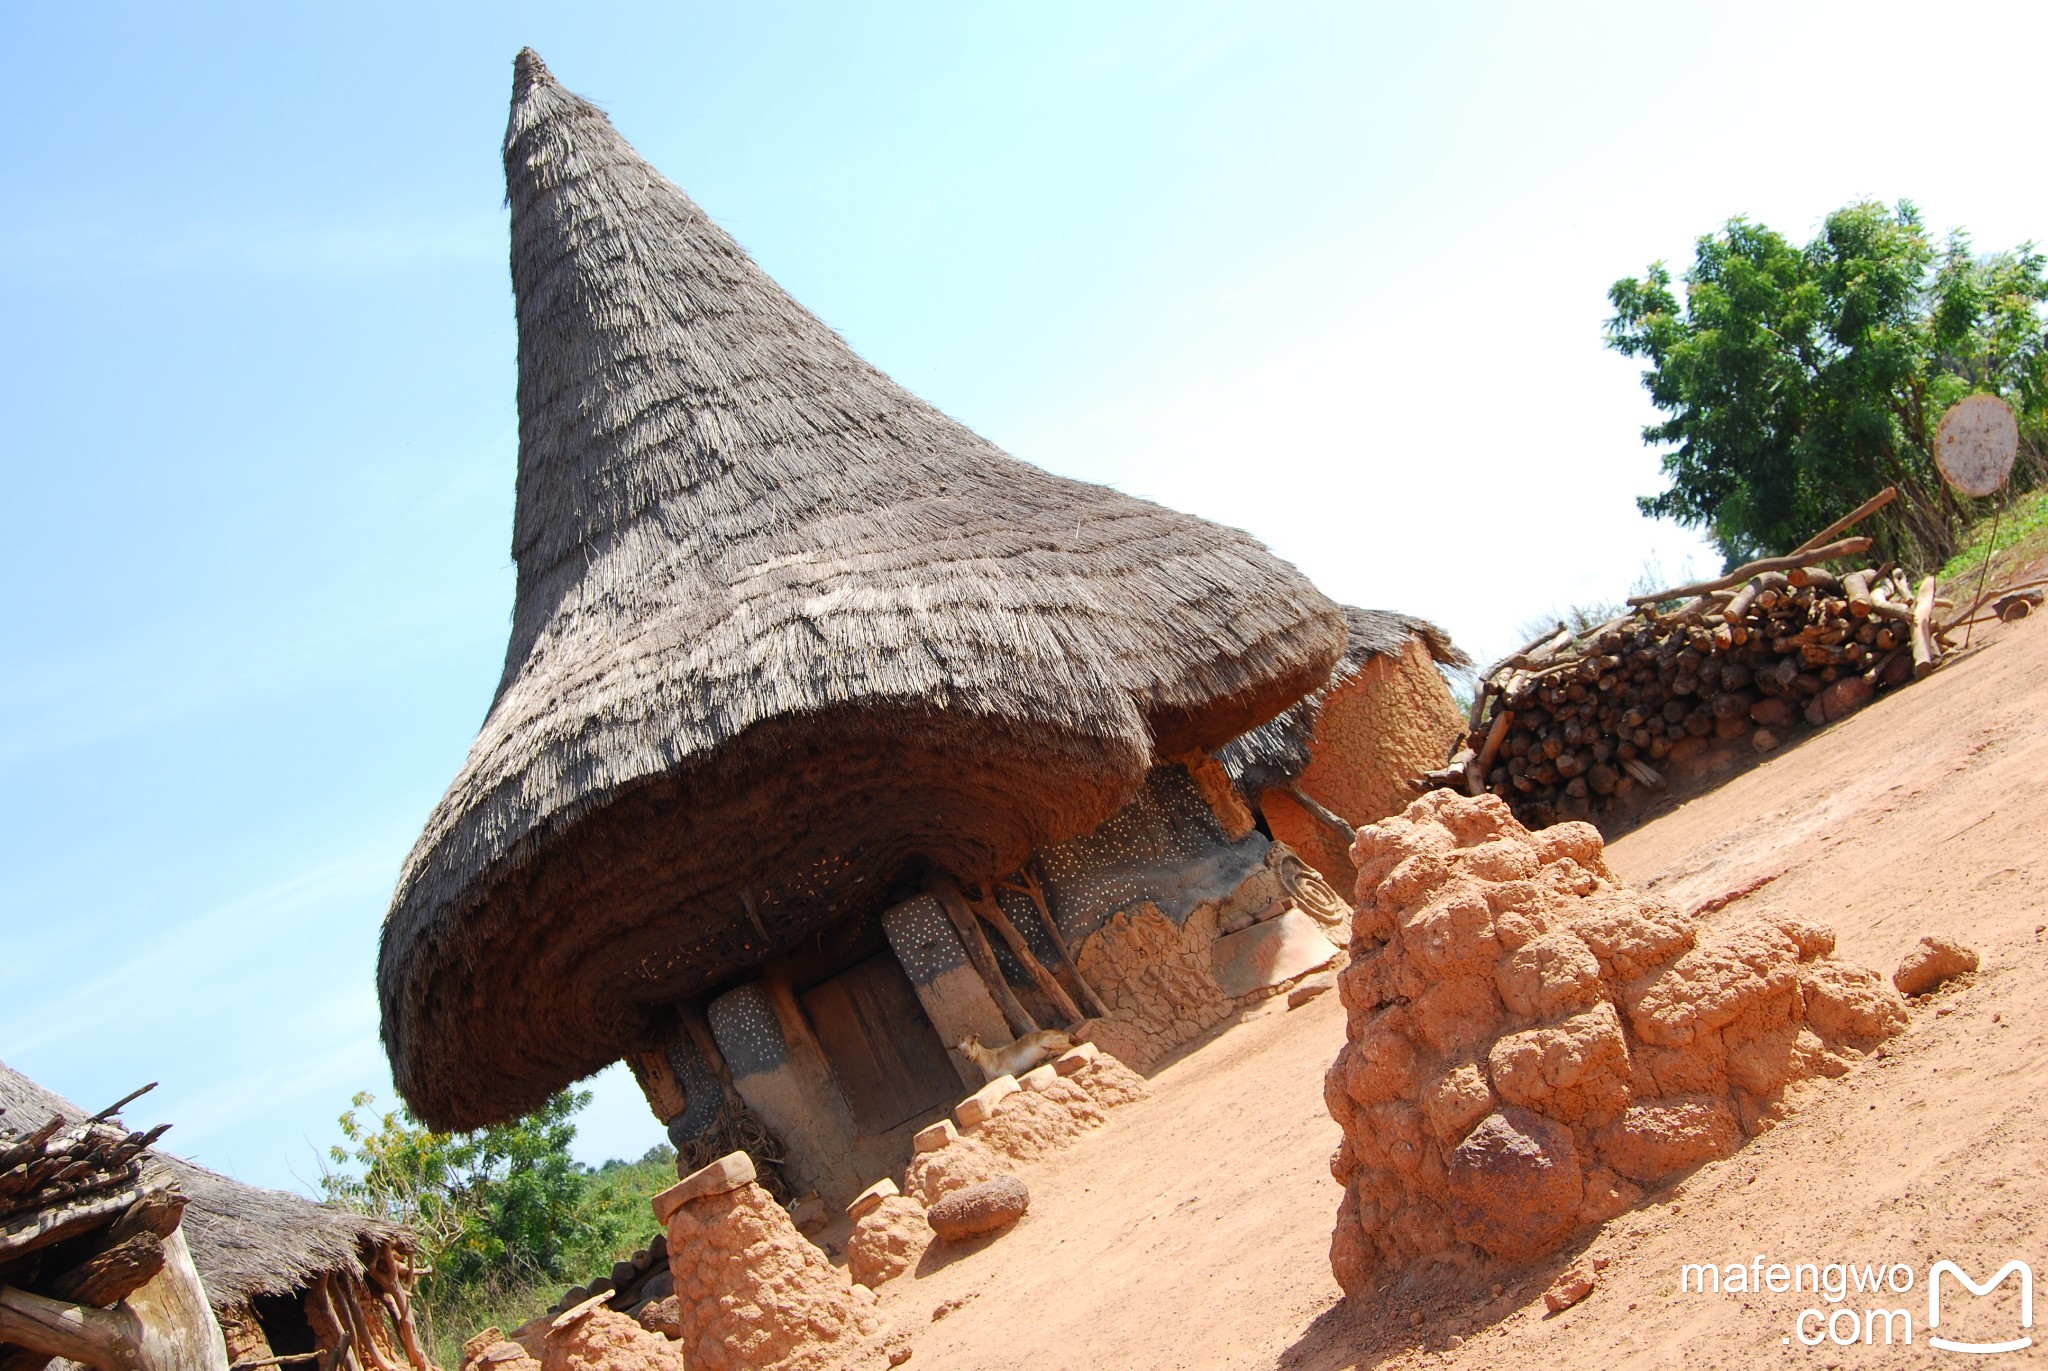 西非-科特迪瓦之一 "一路向北,遇见部落文化与传统工艺"